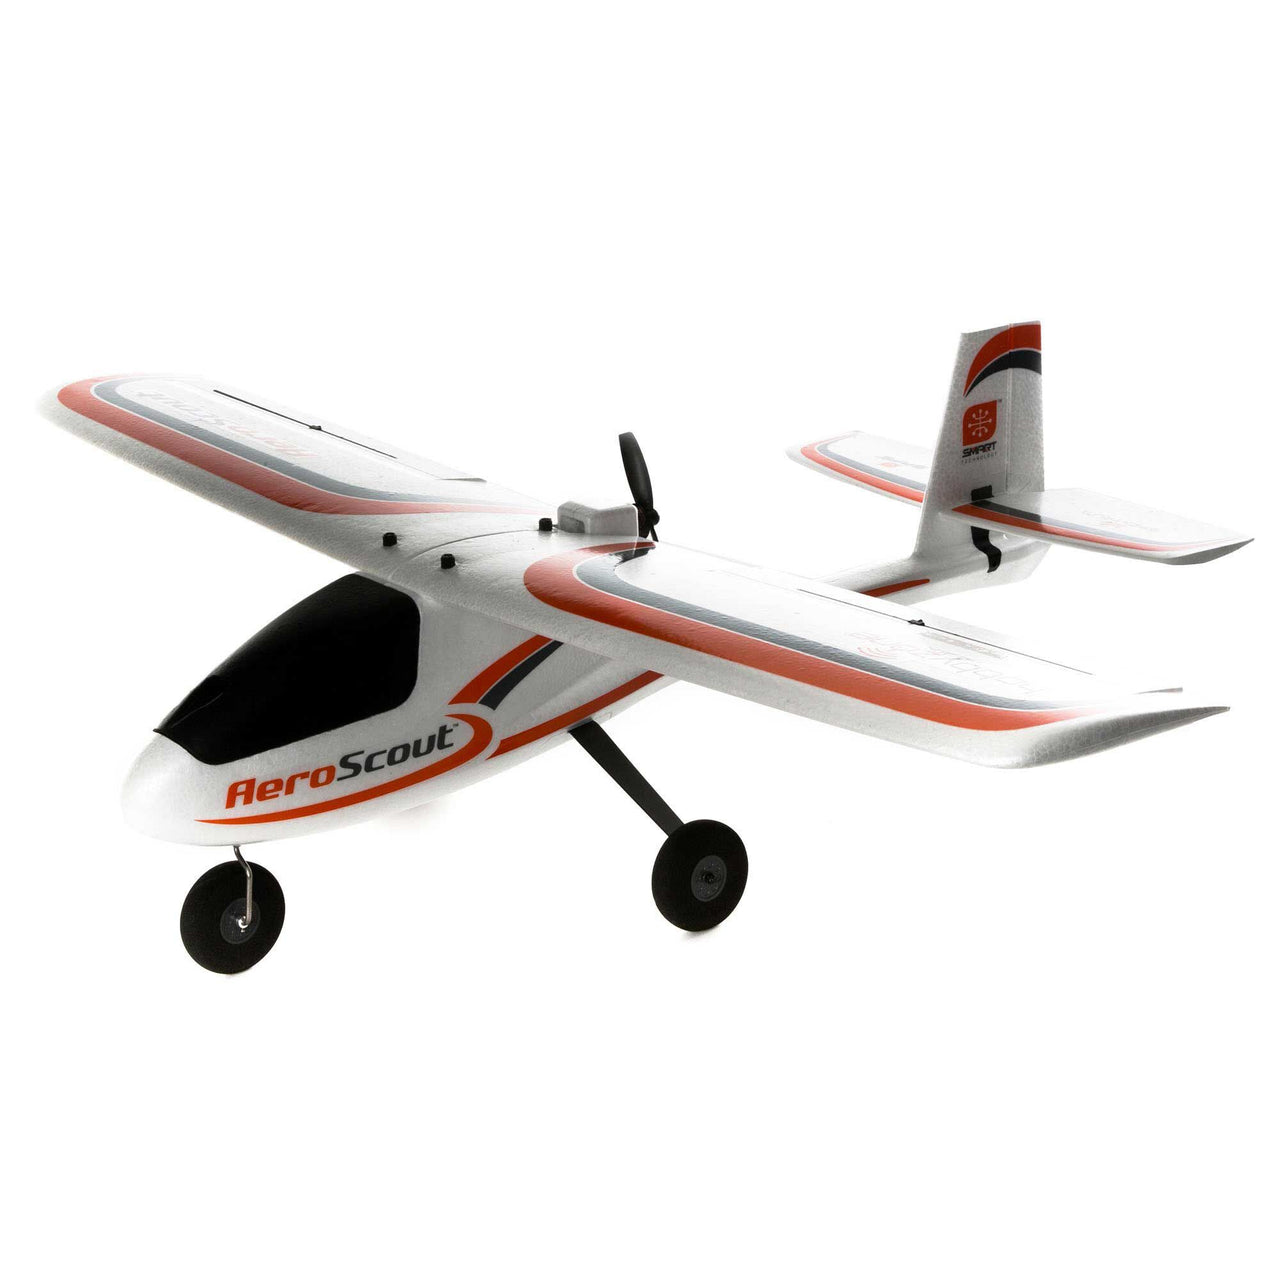 HBZ385001 Hobbyzone AeroScout S 2 1,1 m BNF Basic 